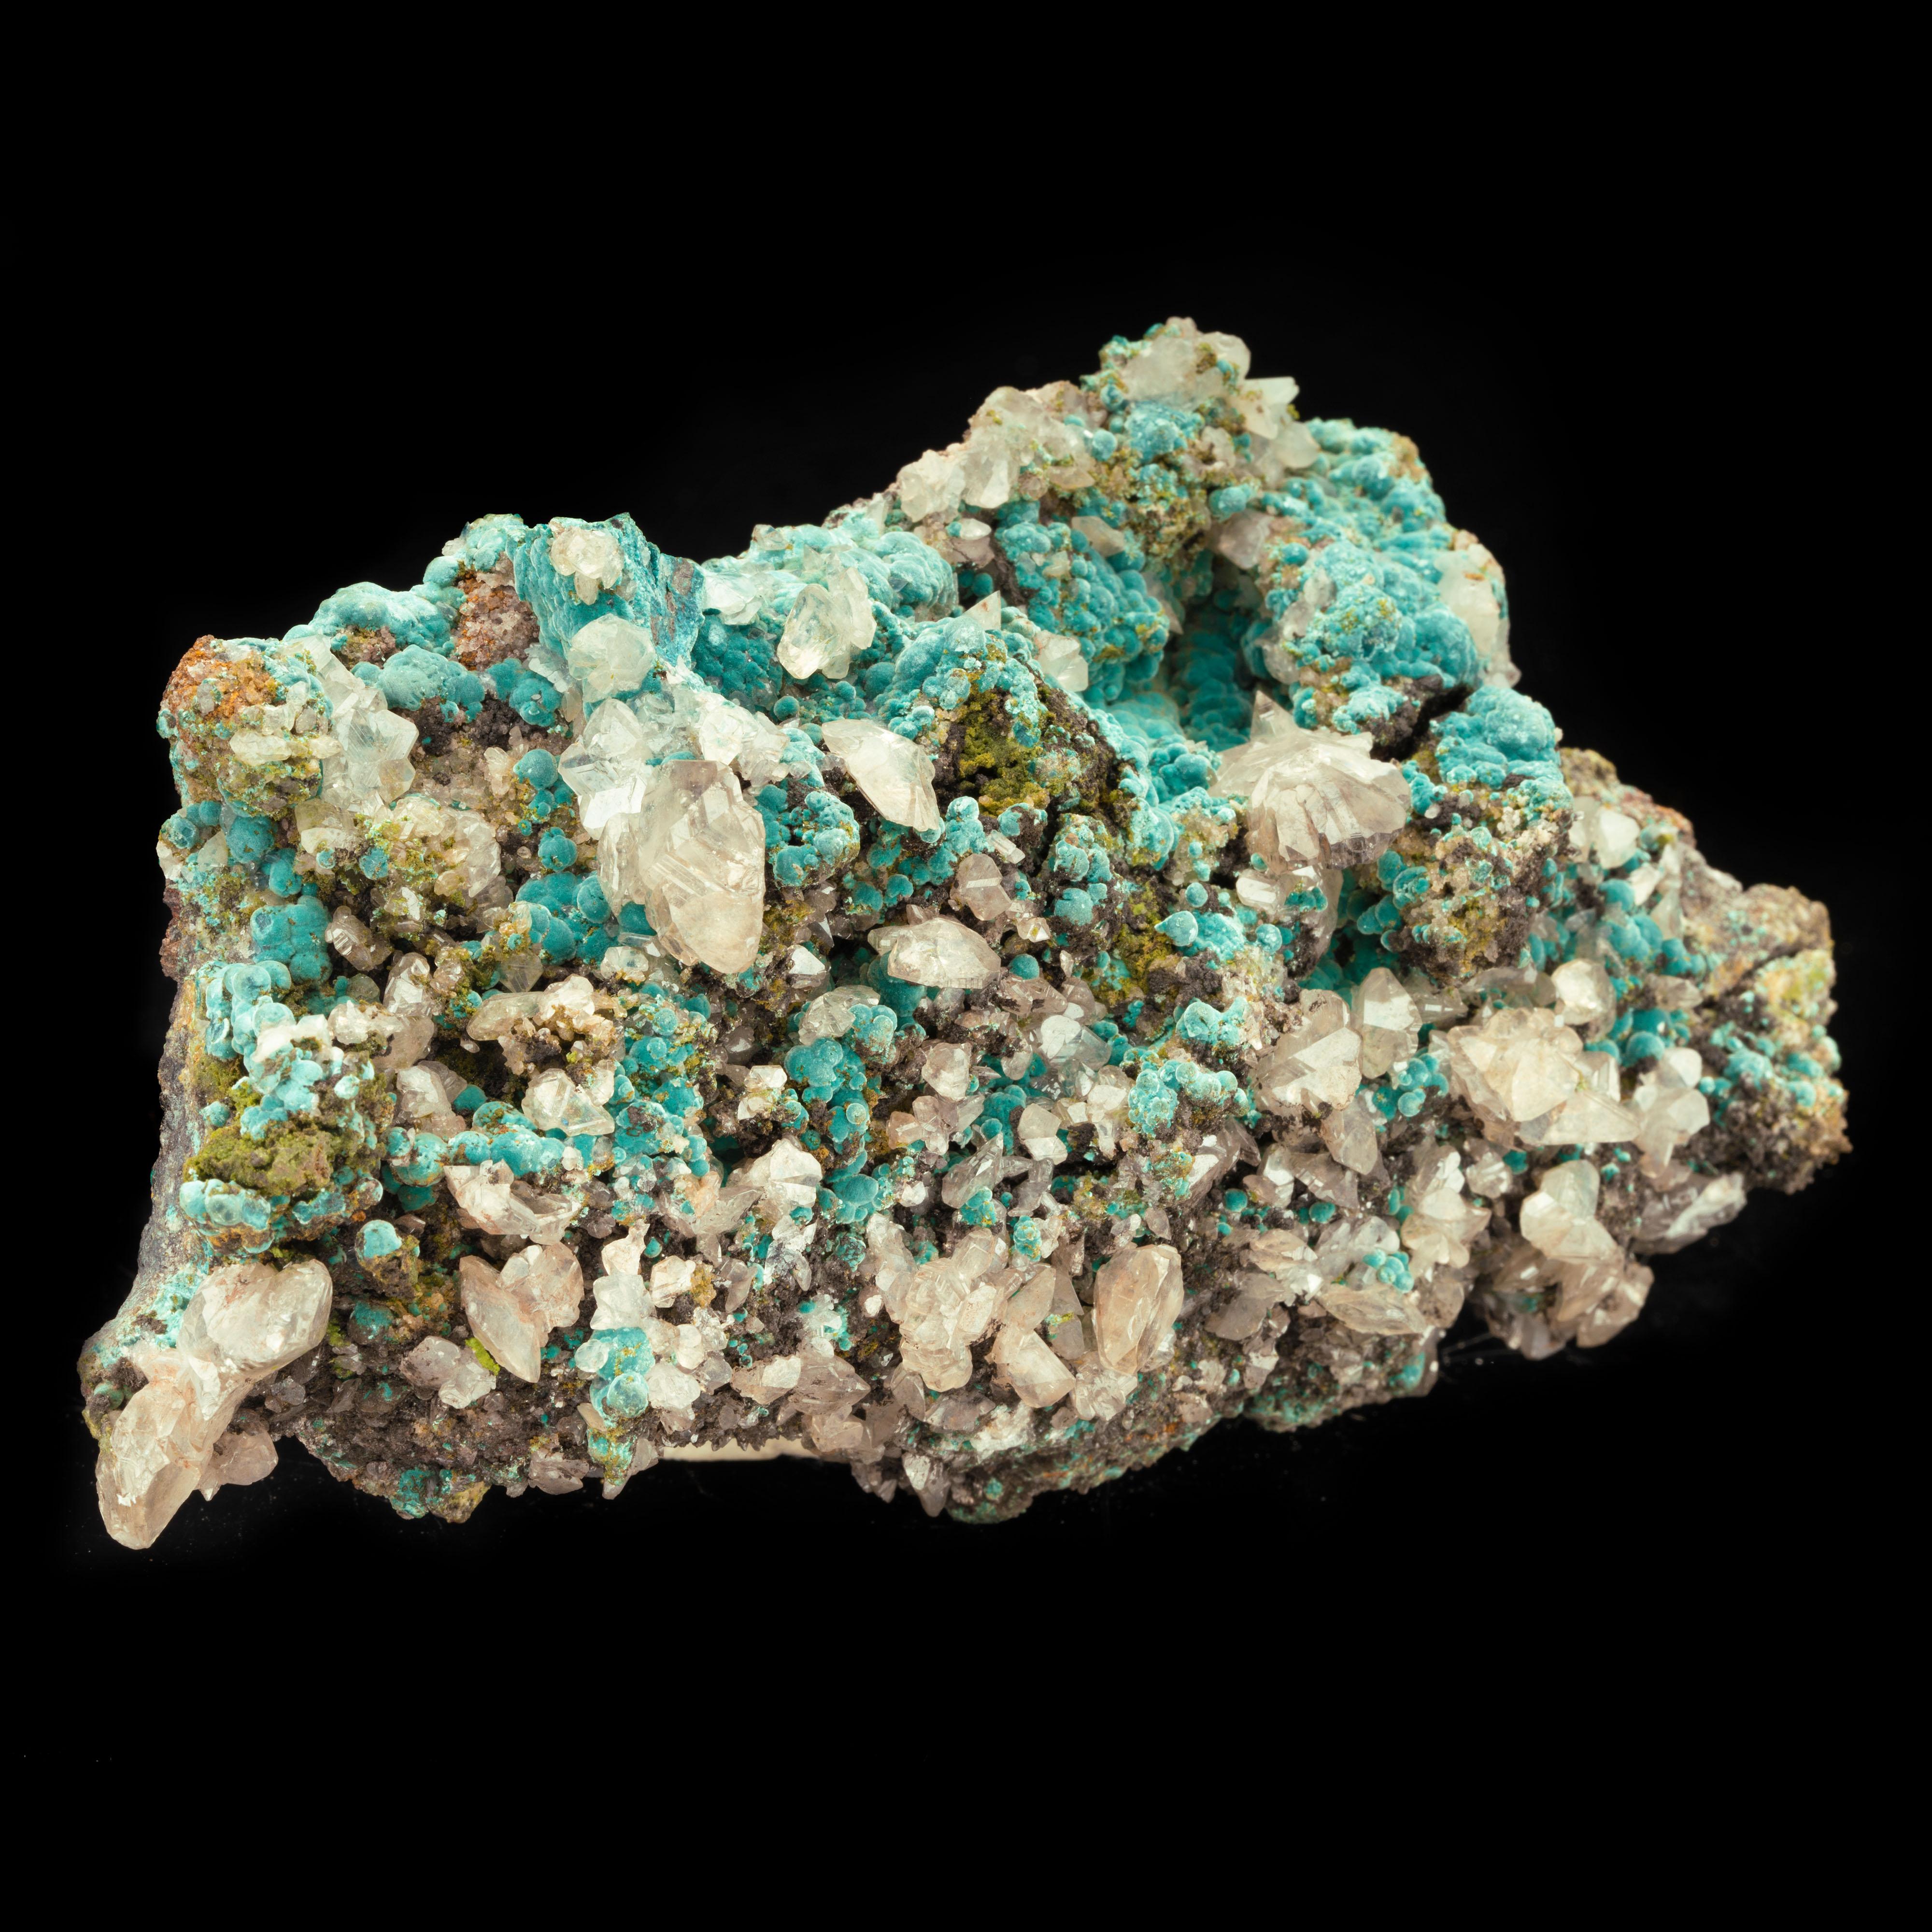 Cette pièce combinée singulière provenant de la mine de Tsumeb, en Namibie, a été obtenue dans les années 1970. De grands cristaux abondants de cerrusite gemme sur de la rosasite d'une couleur turquoise presque étonnante constituent un spécimen